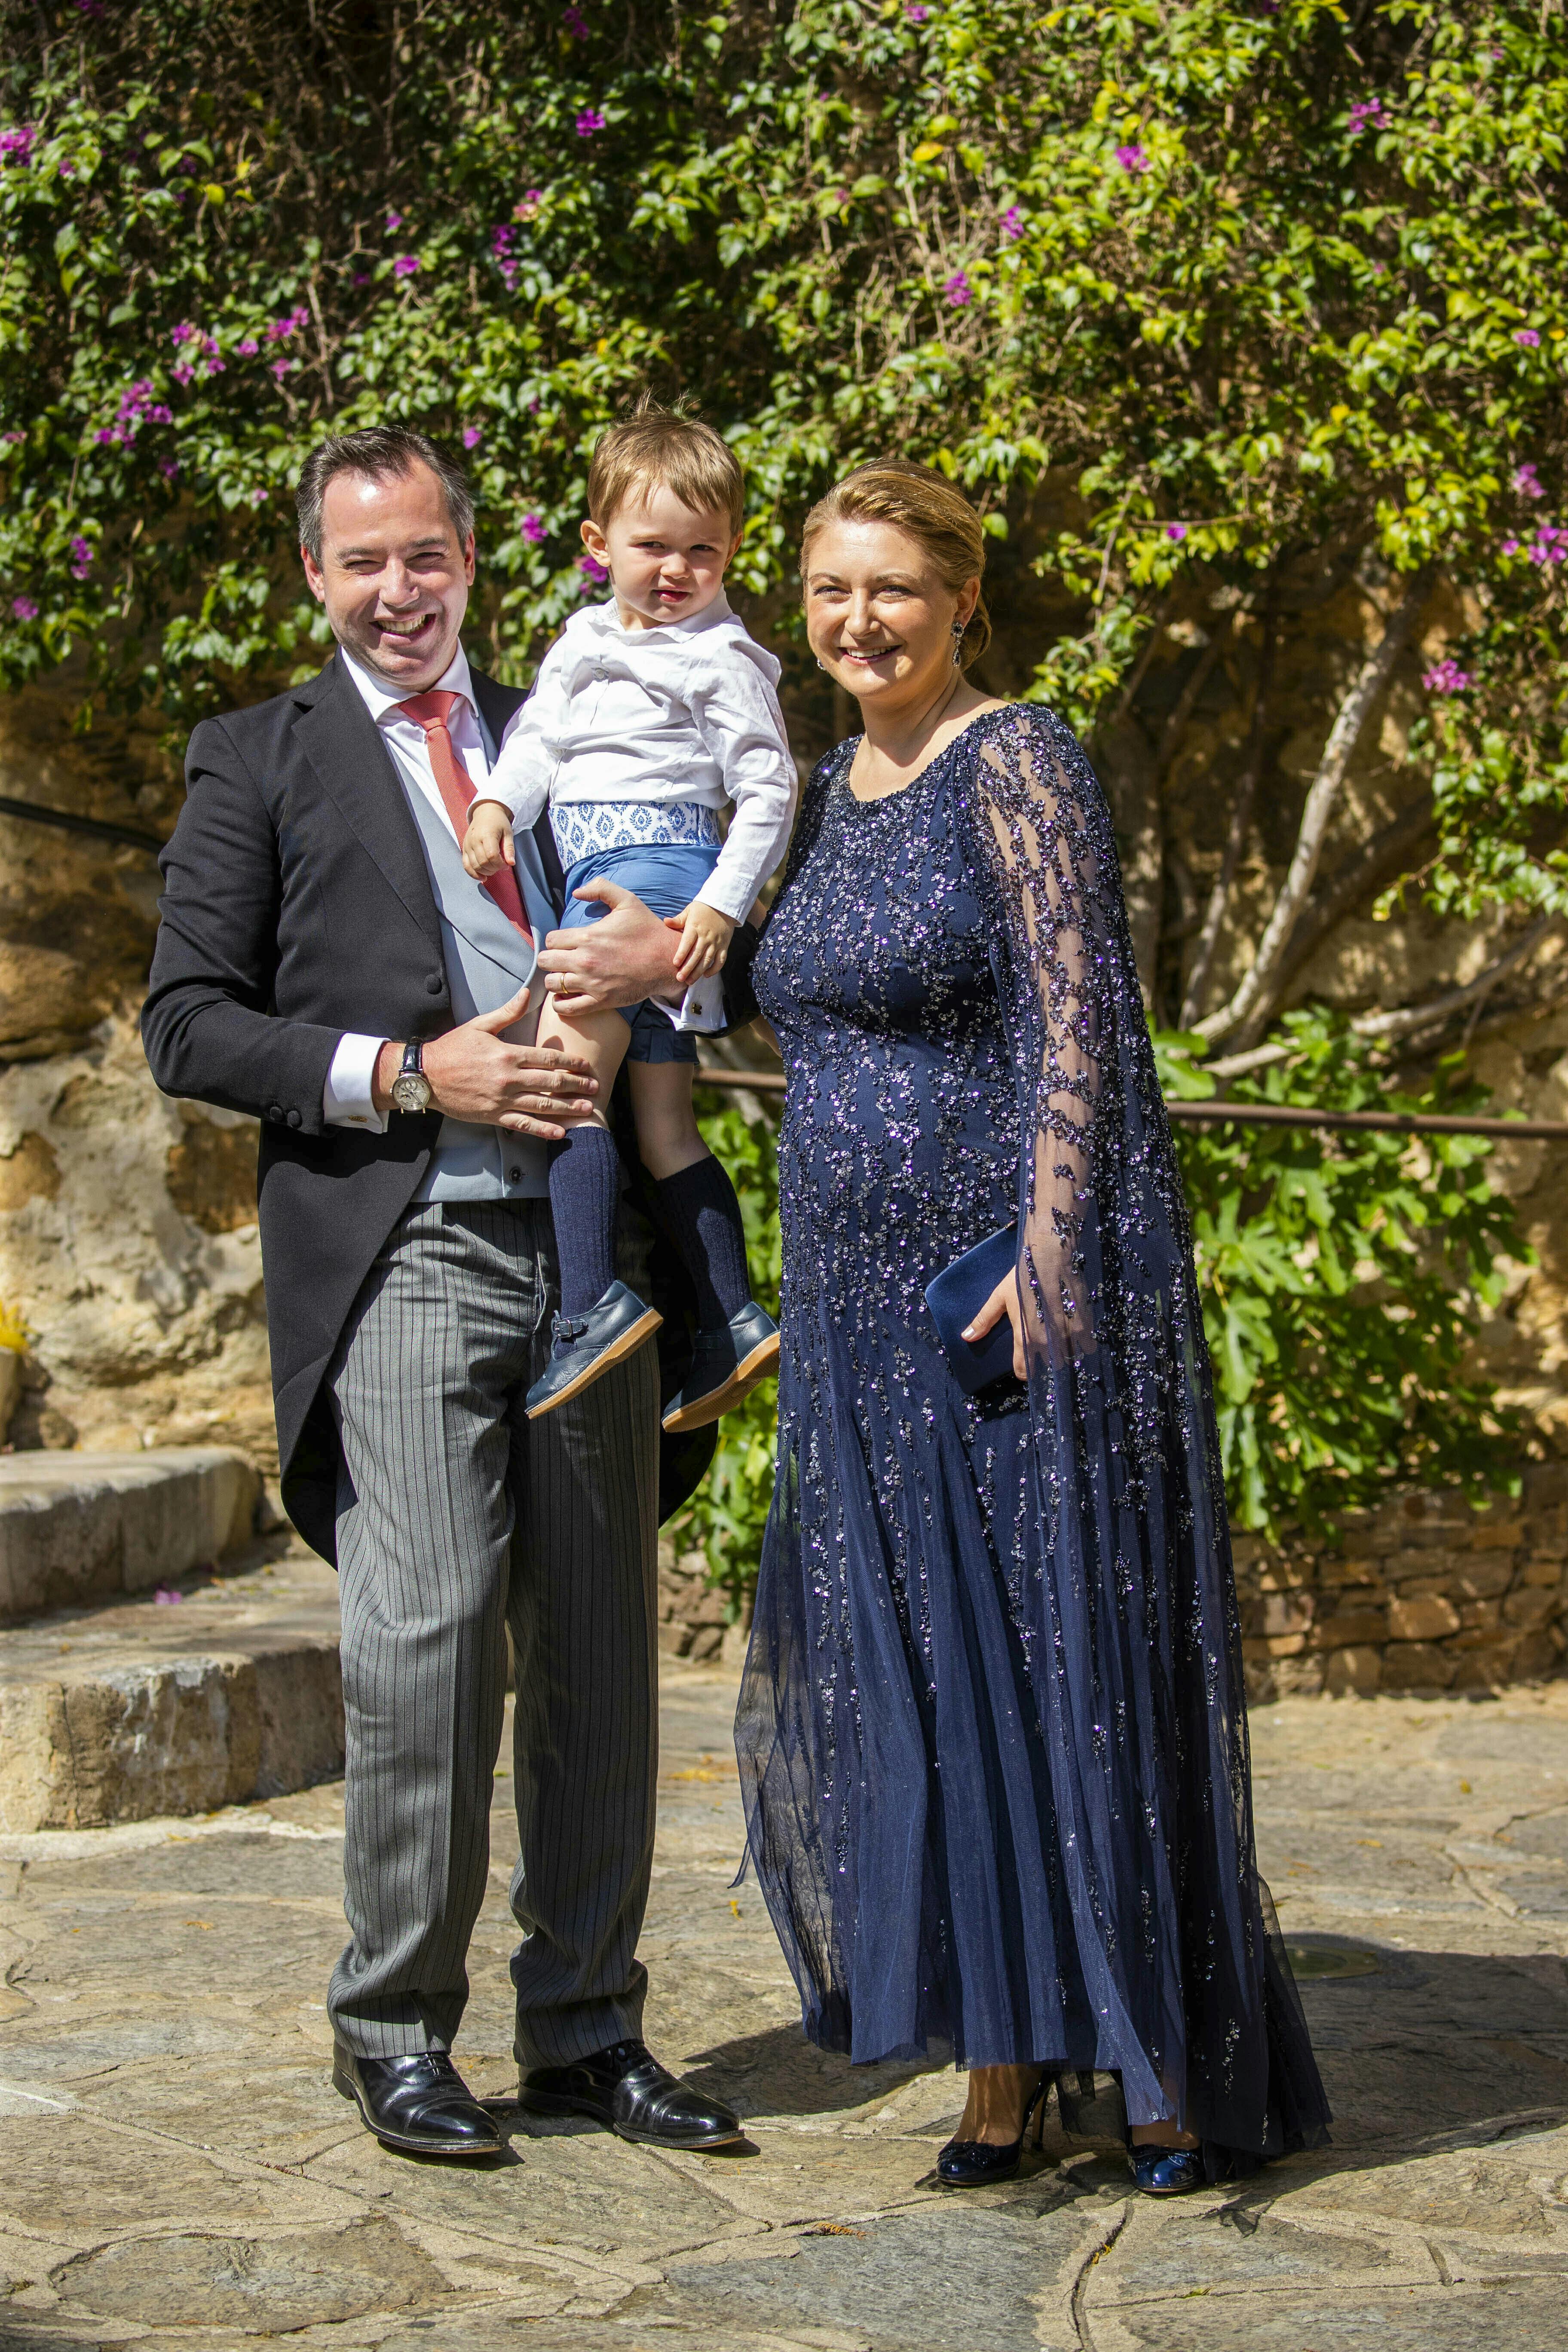 Arvestorhertugparret Guillame og Stéphanie til bryllup med sønnen prins Charles.&nbsp;
